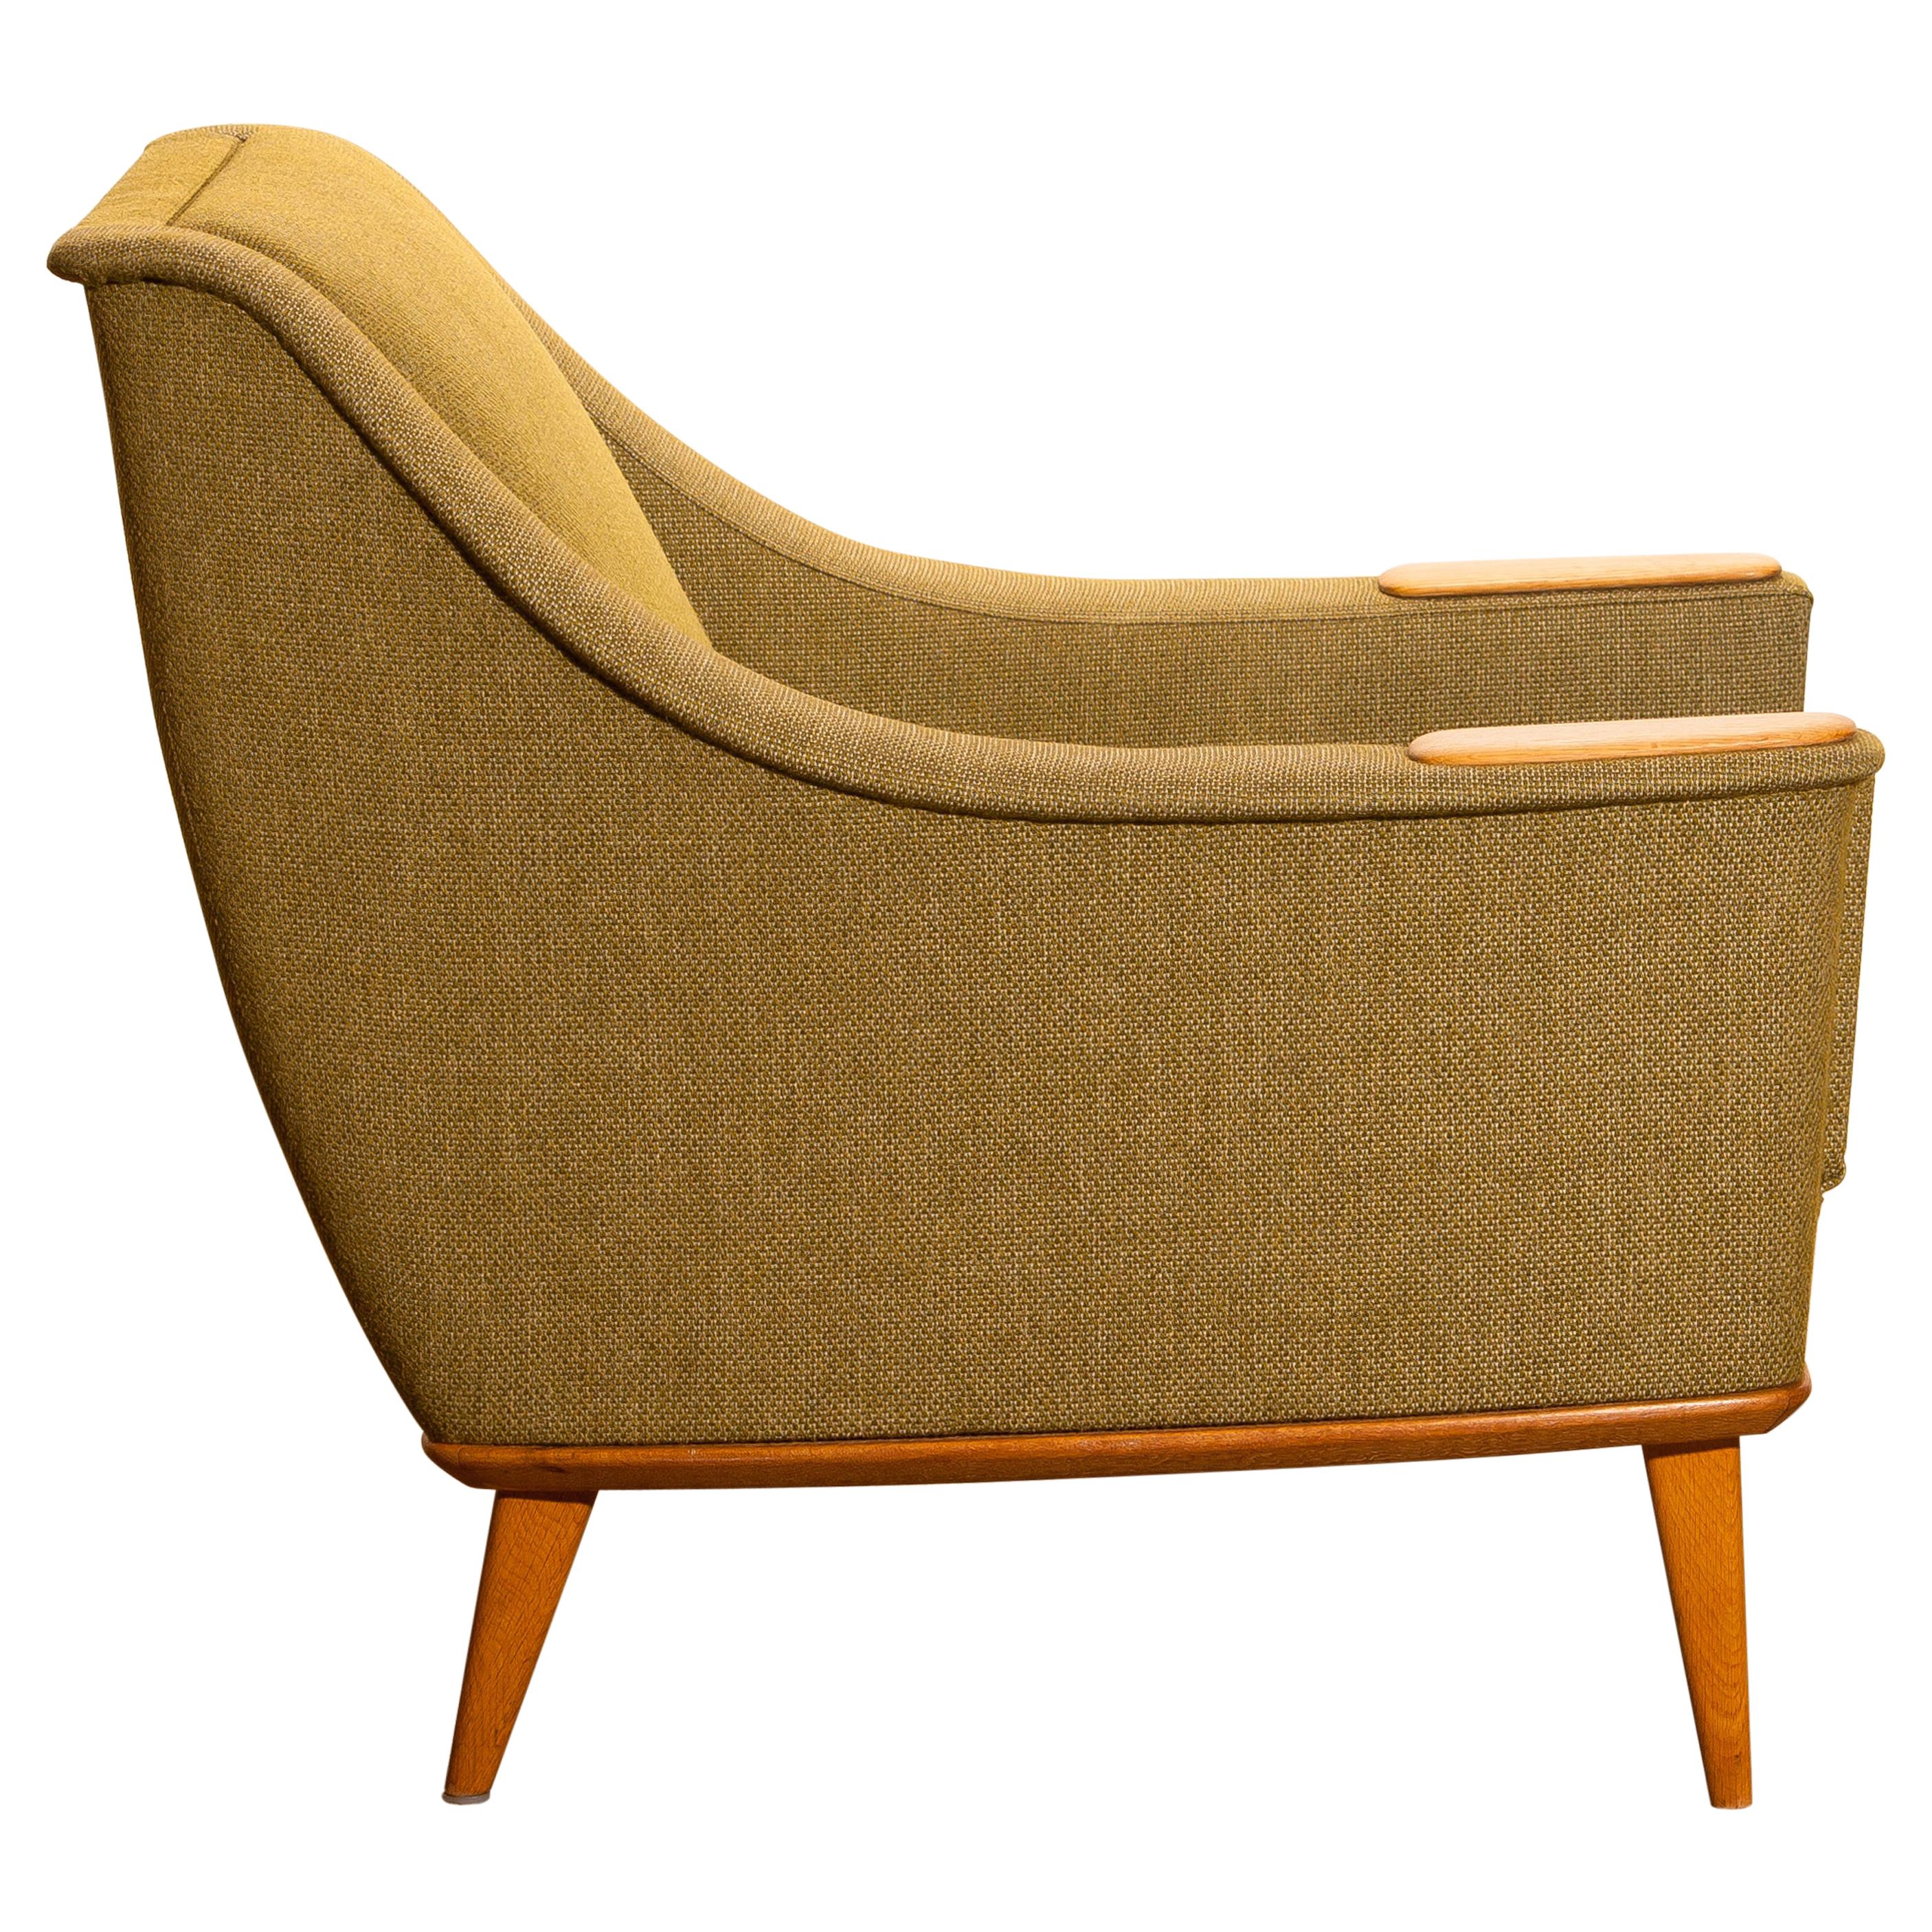 Swedish 1960s, Green Upholstered Oak Lounge / Easy Chair, Folke Ohlsson for DUX, Sweden